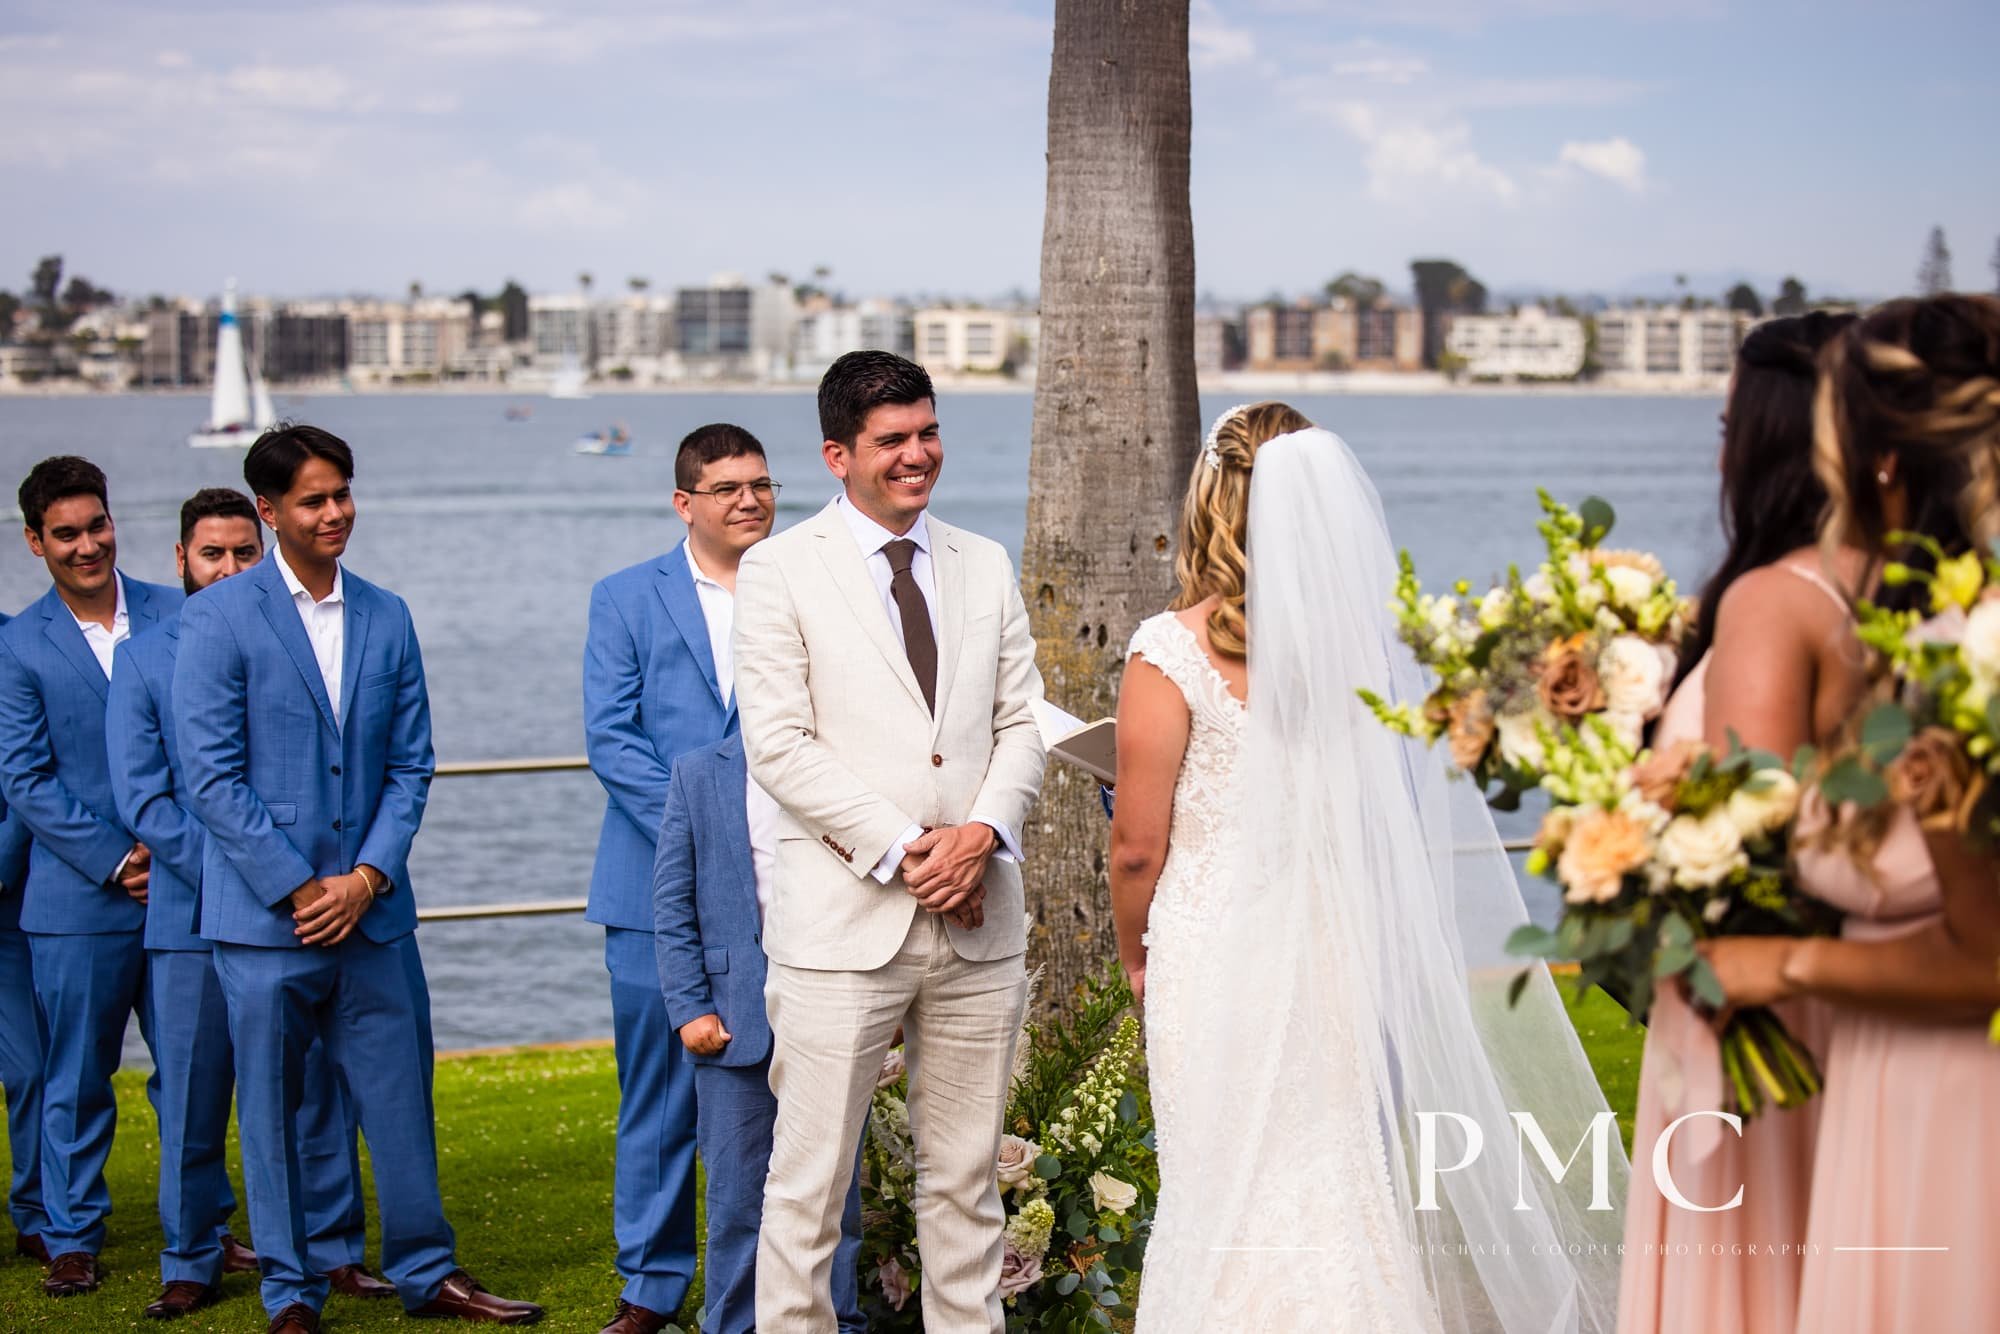 Tower Beach Club - Mission Bay Wedding - Best San Diego Wedding Photographer-15.jpg